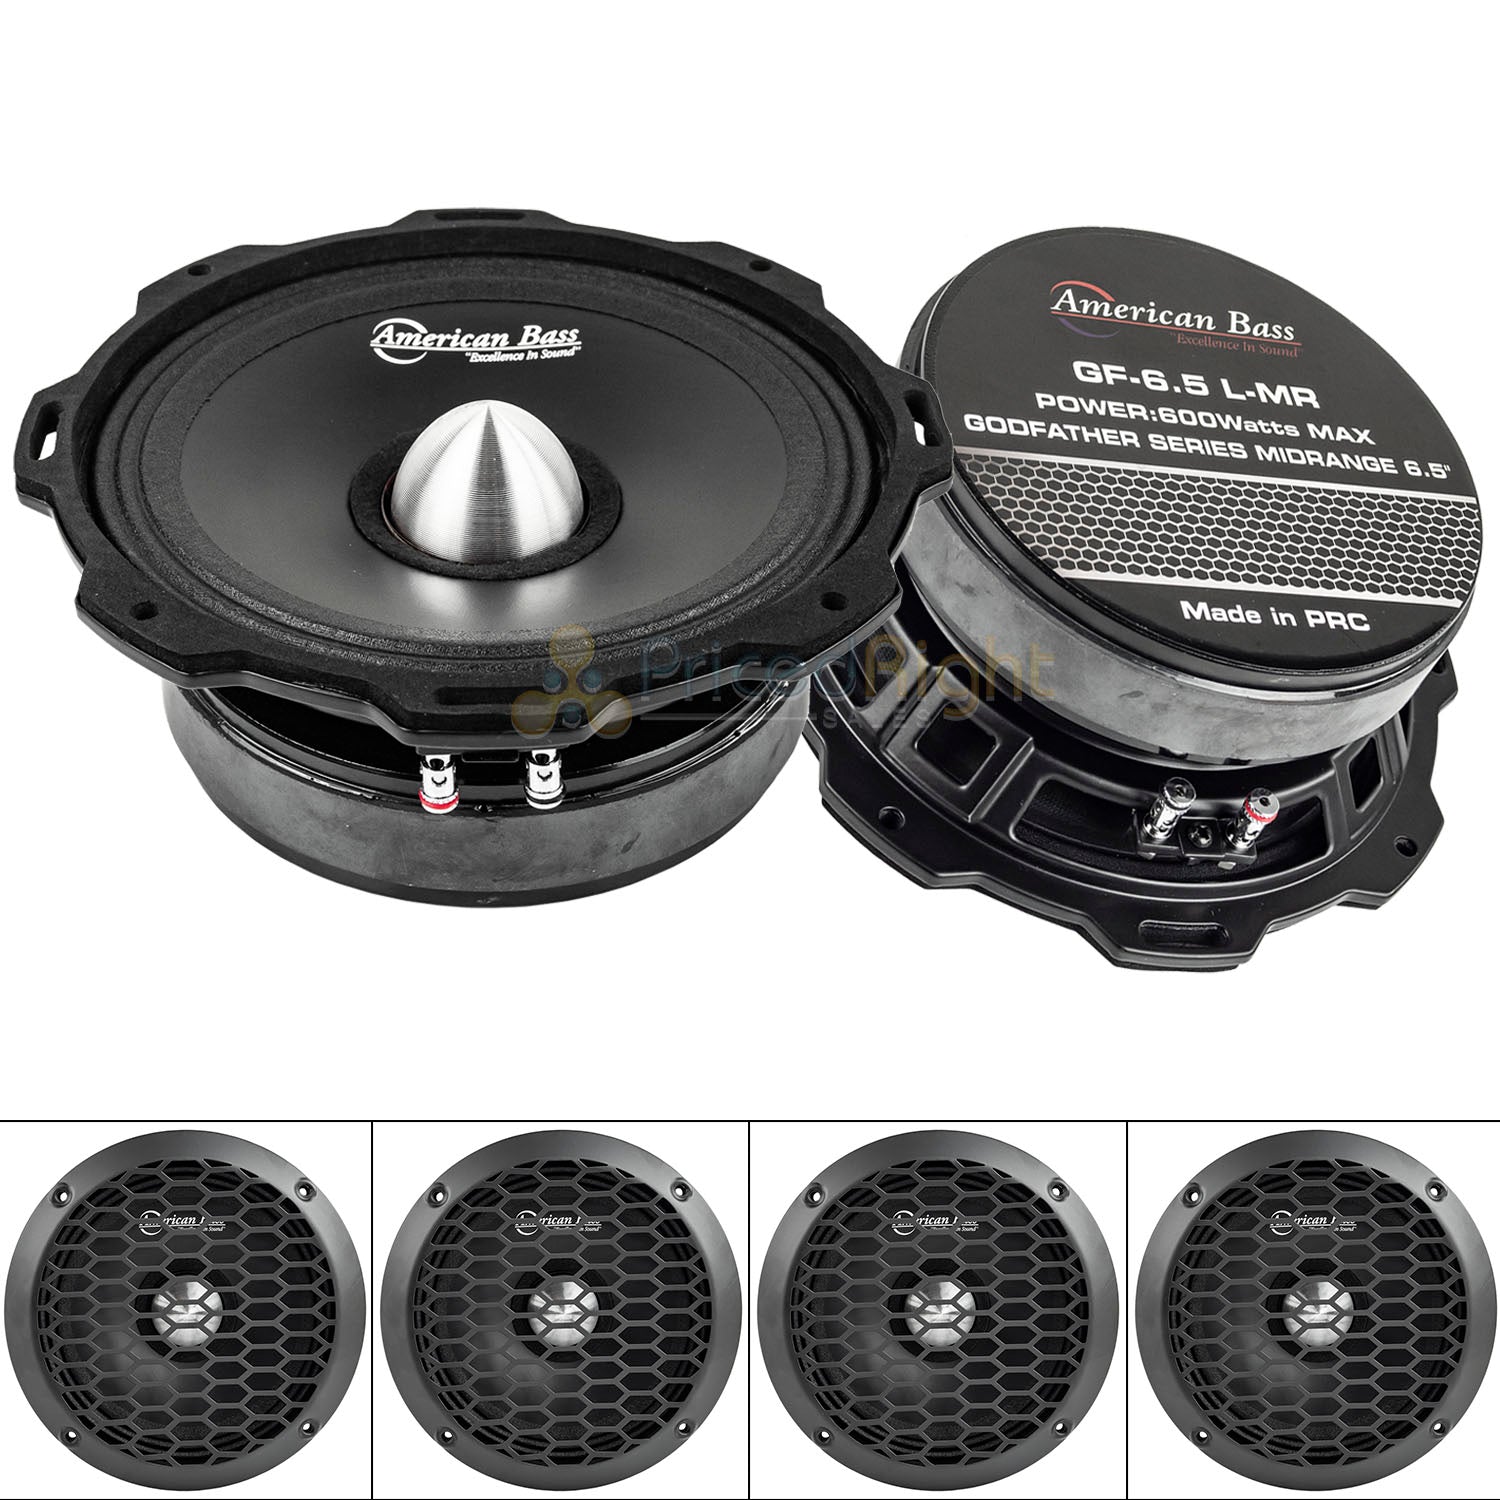 American Bass GF-6.5 L-MR 6.5" Midrange Speakers Godfather 600 Watts Max 4 Pack